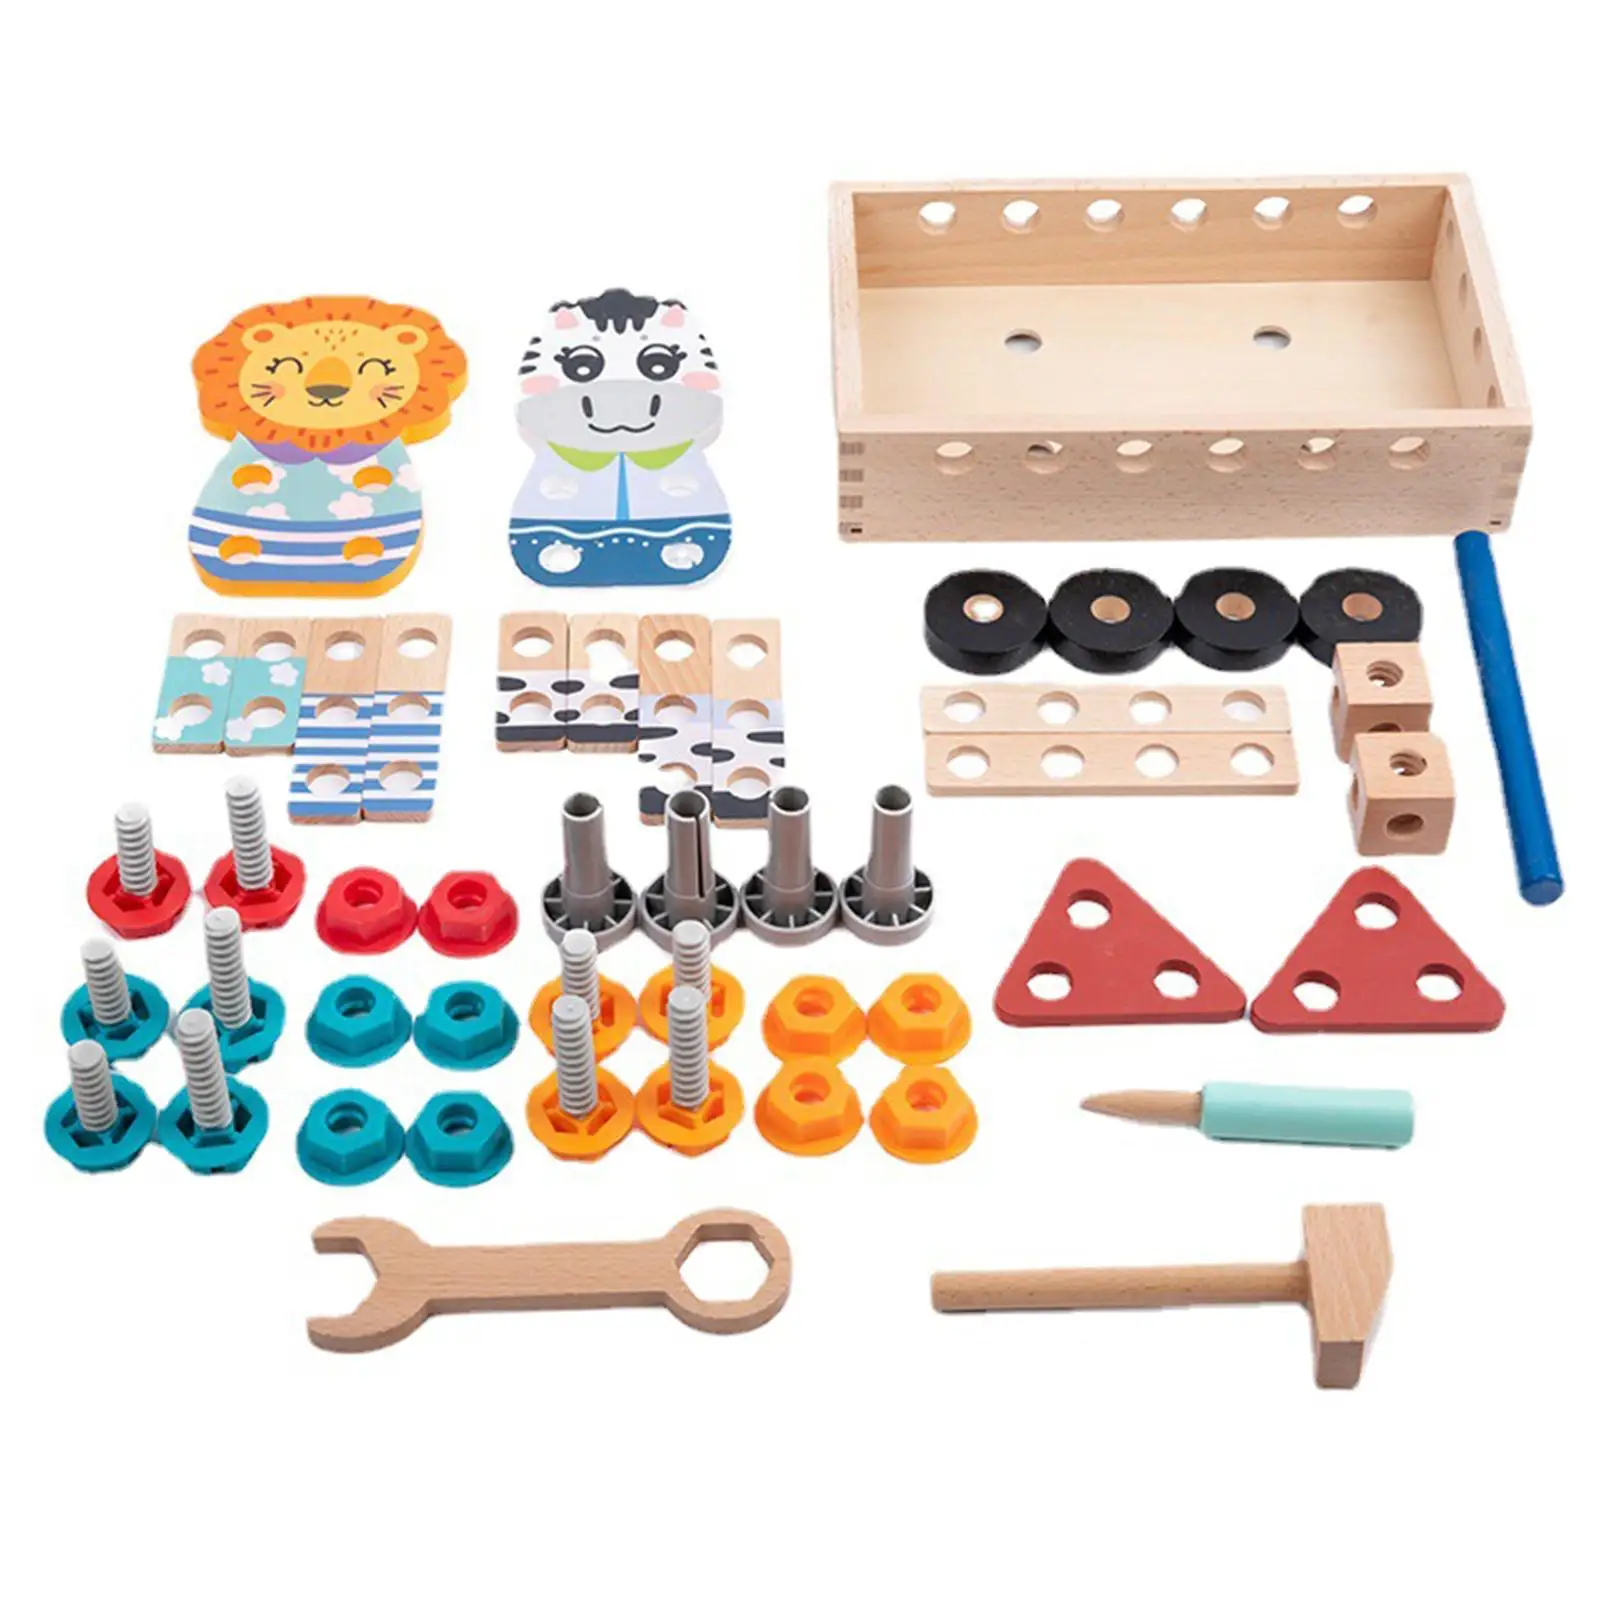 Construction building Toolbox Set for Preschool Activities Outdoor